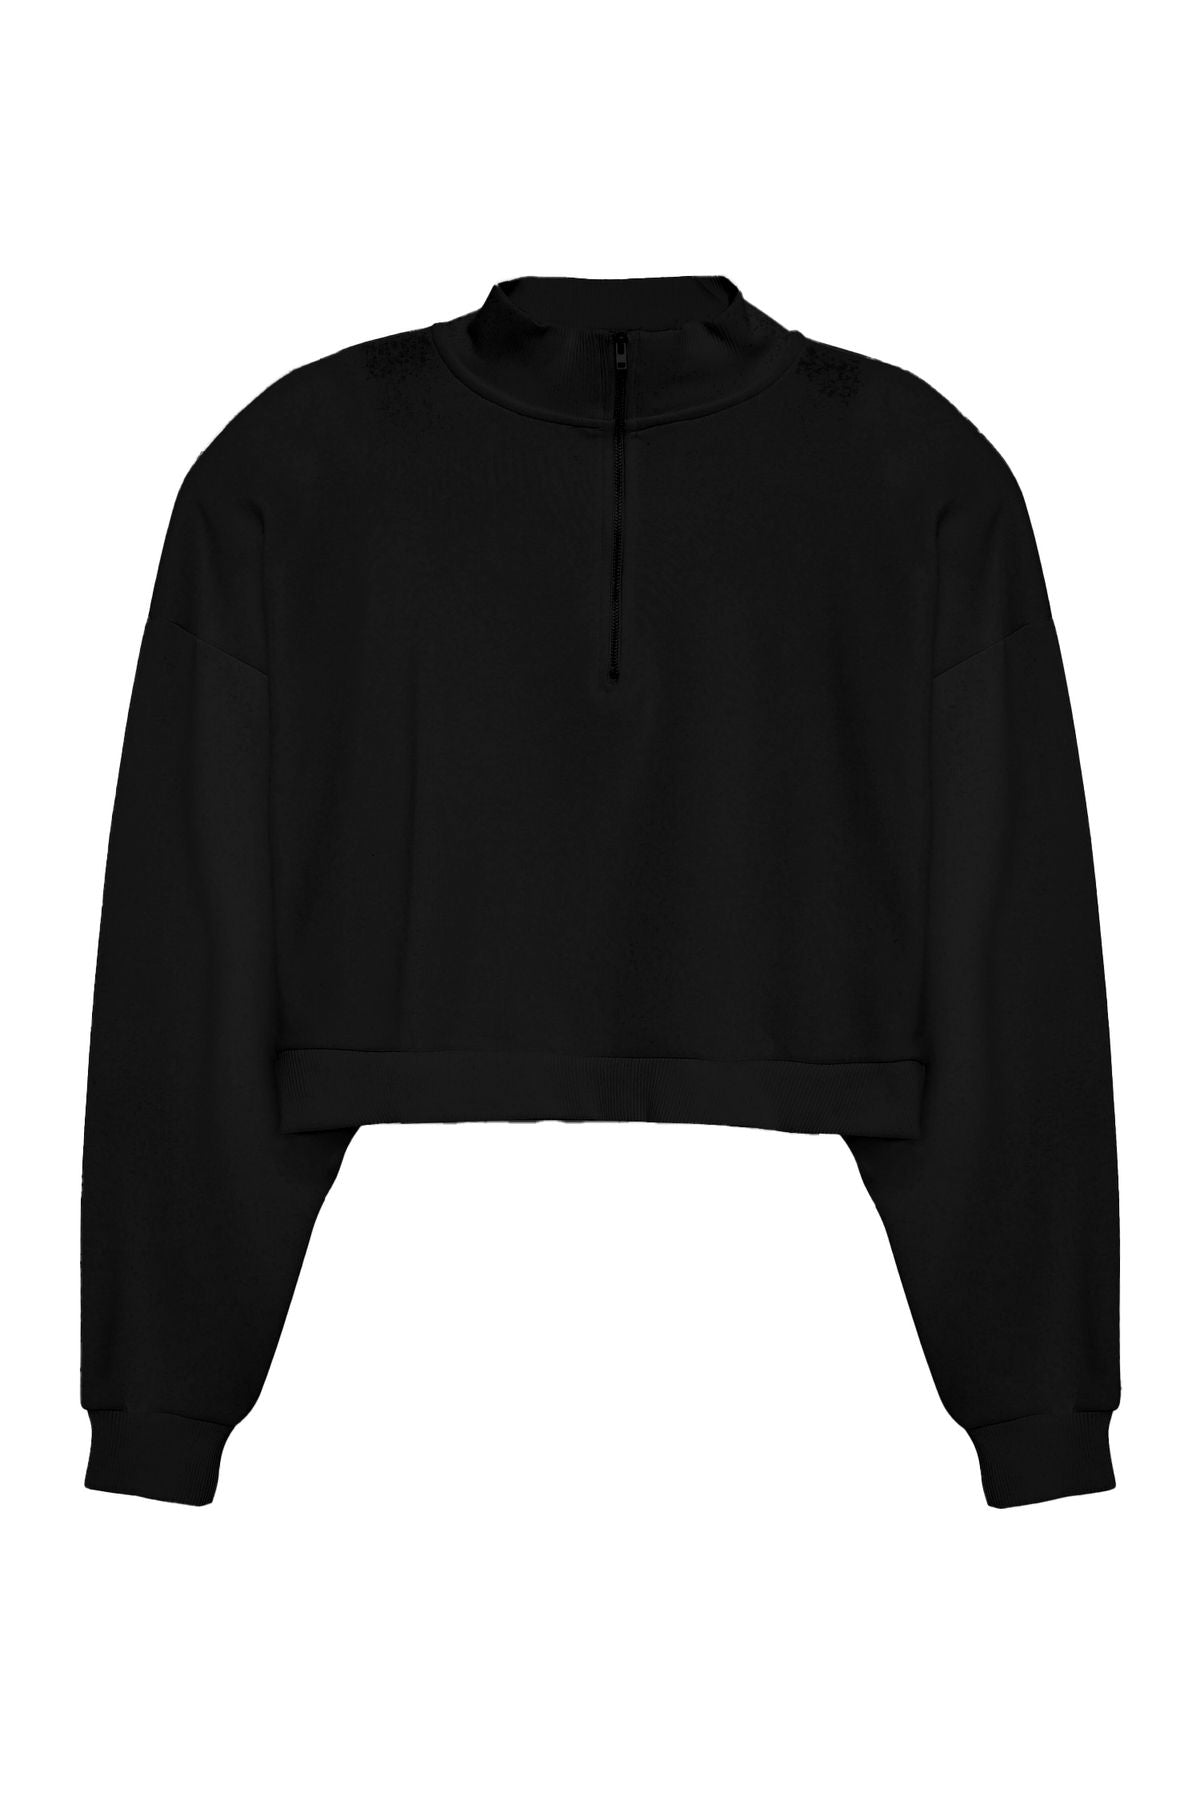 Zipper Detailed Crop Sweatshirt Black